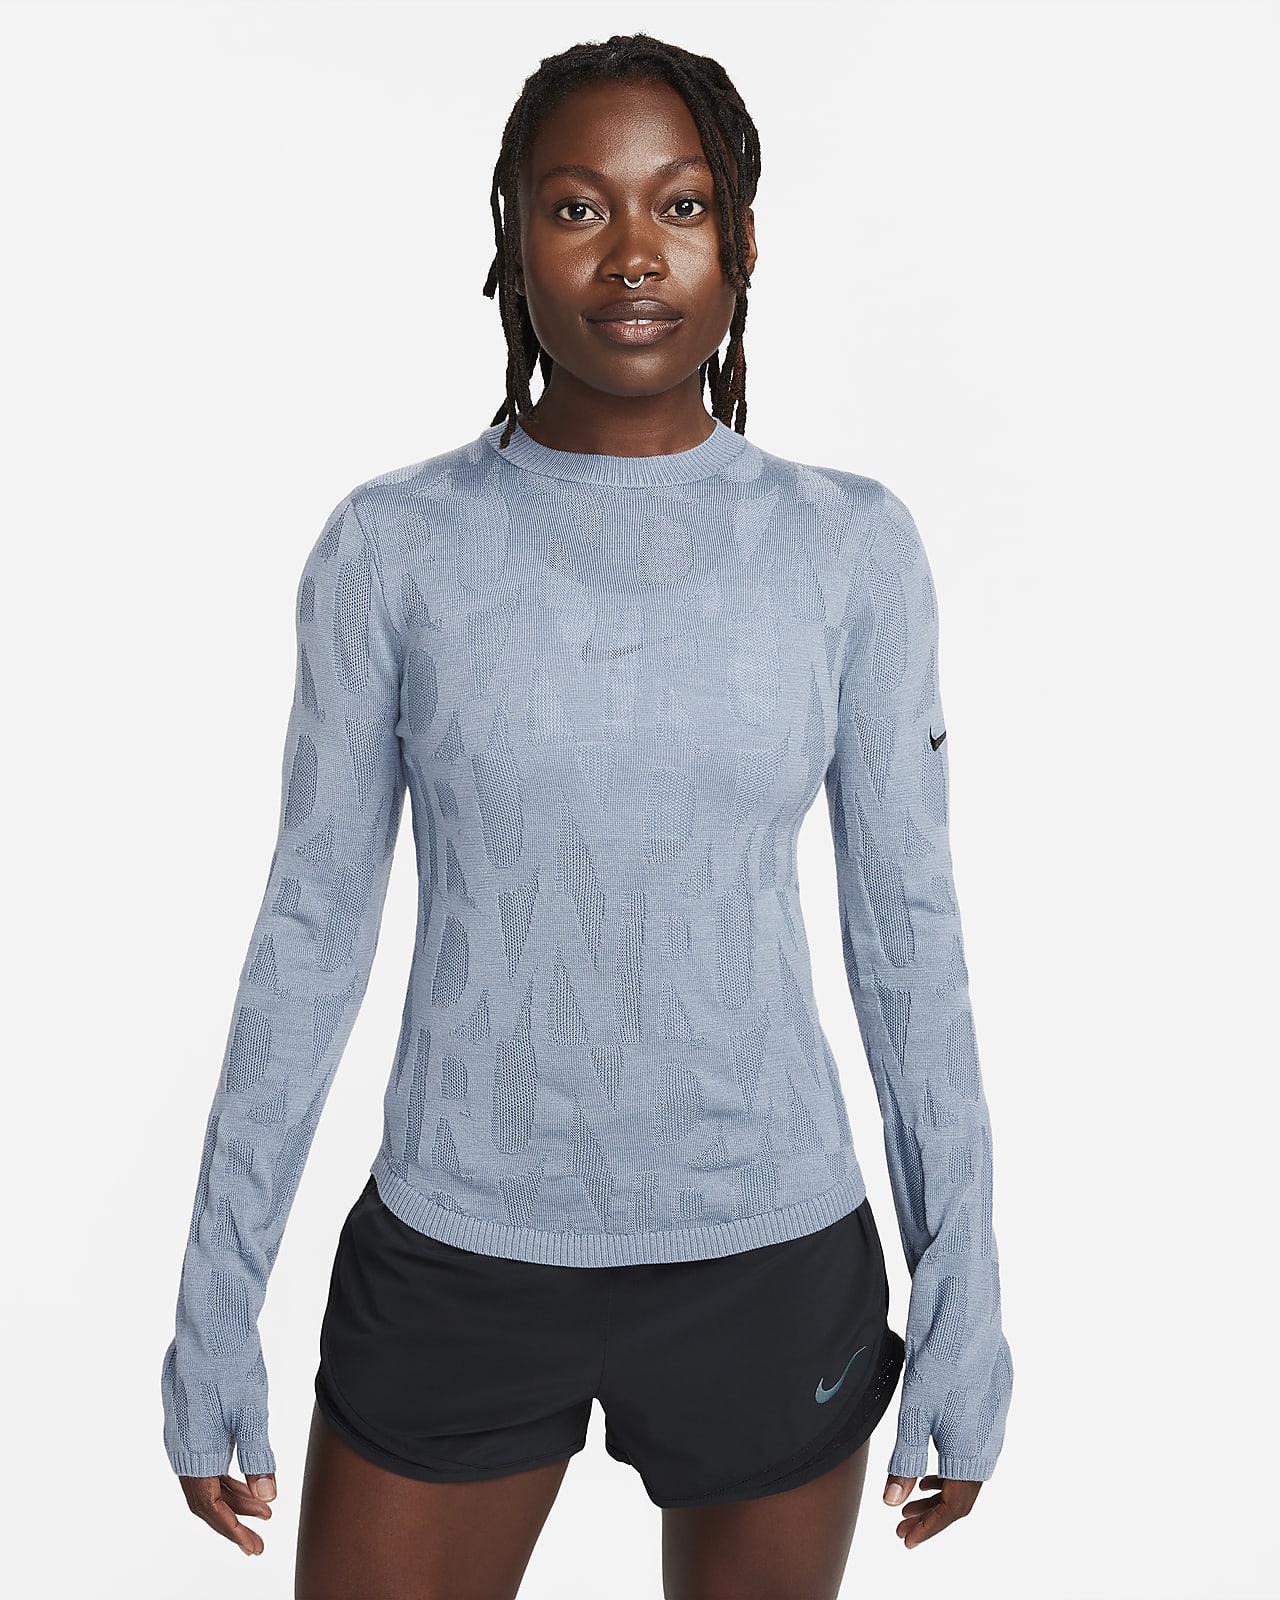 Nike Running Division tussenlaag voor hardlopen voor dames